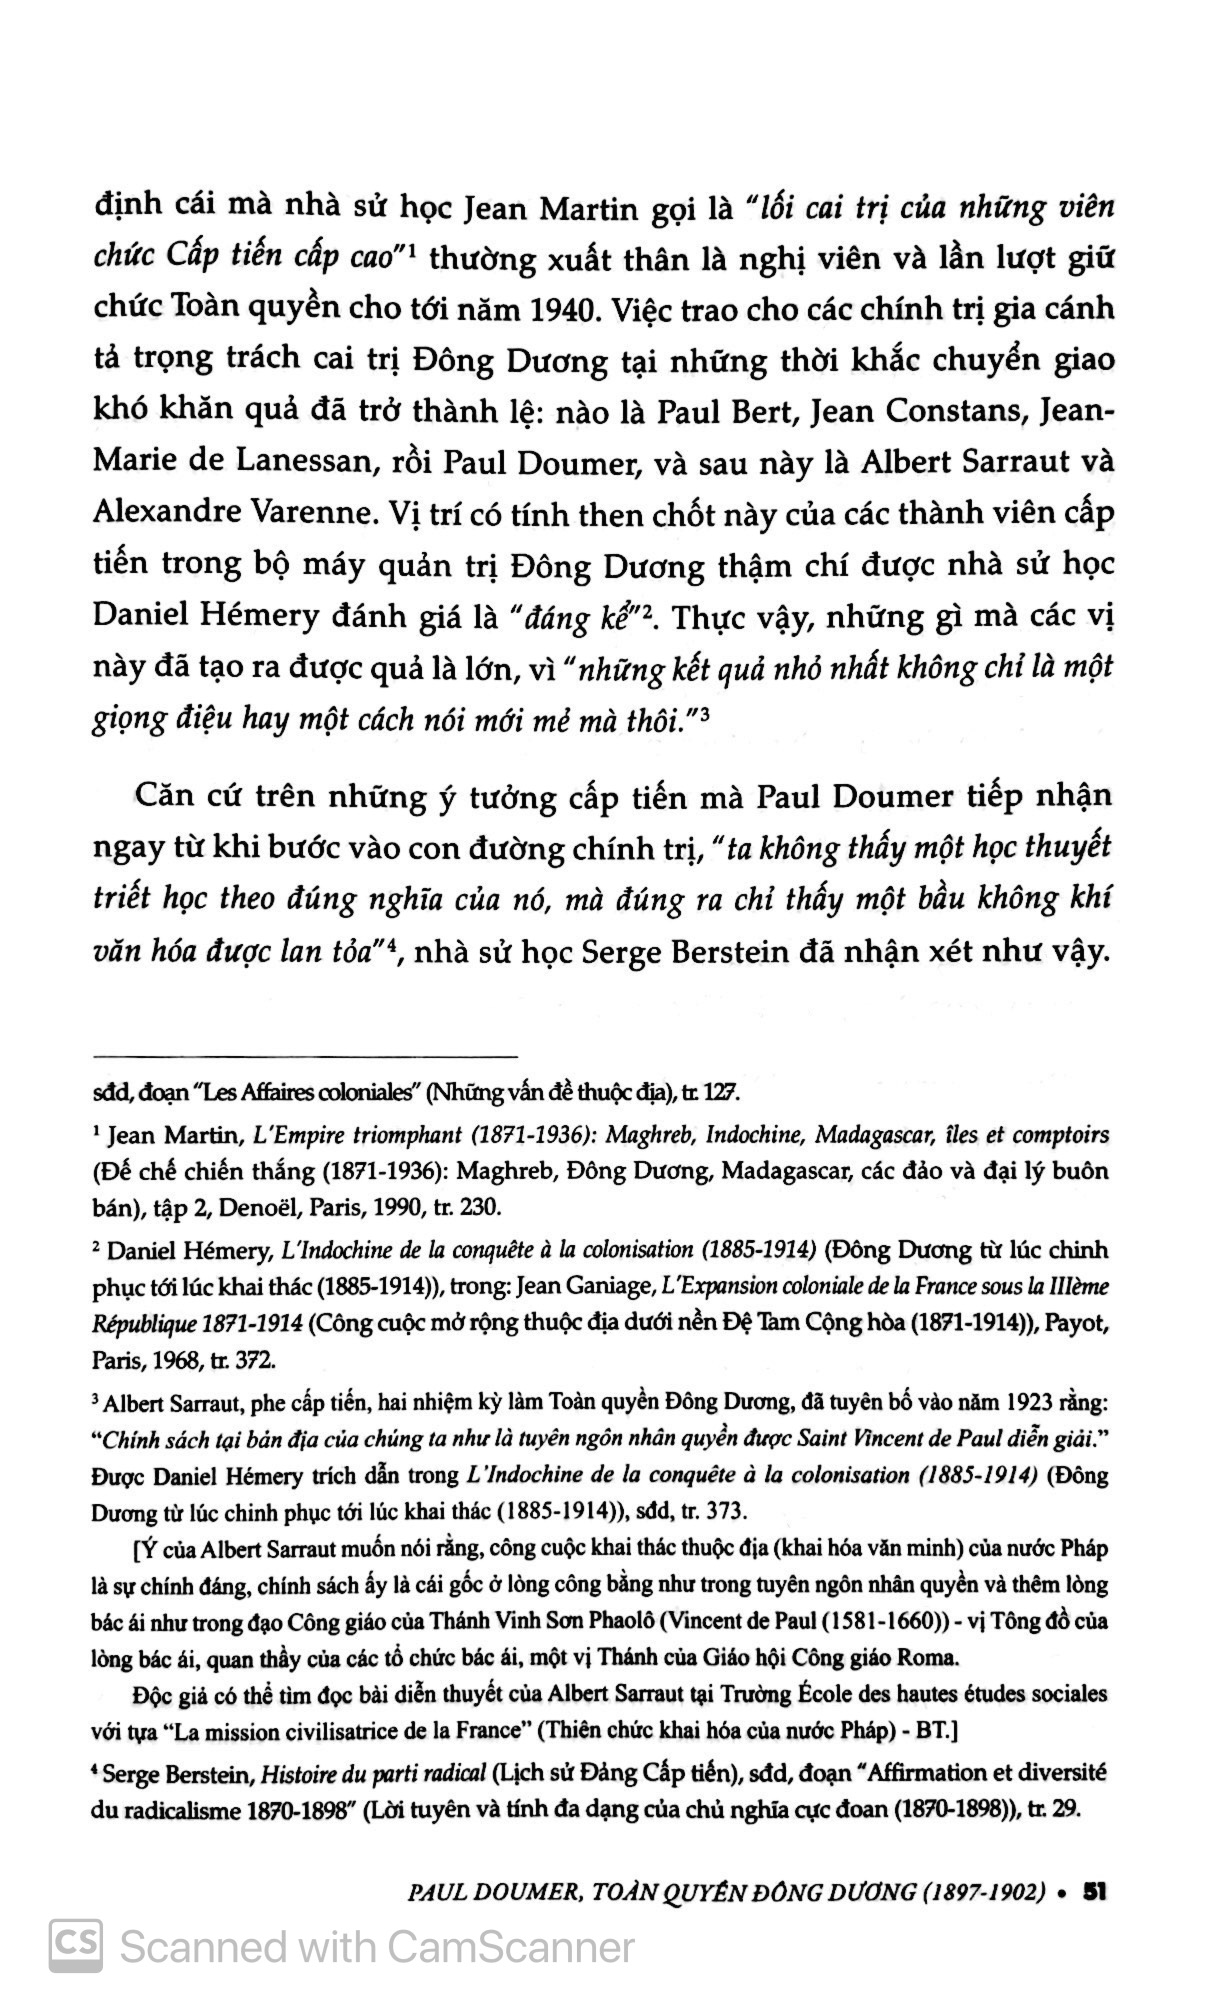 Paul Doumer - Toàn Quyền Đông Dương 1897-1902: Bàn Đạp Thuộc Địa PDF